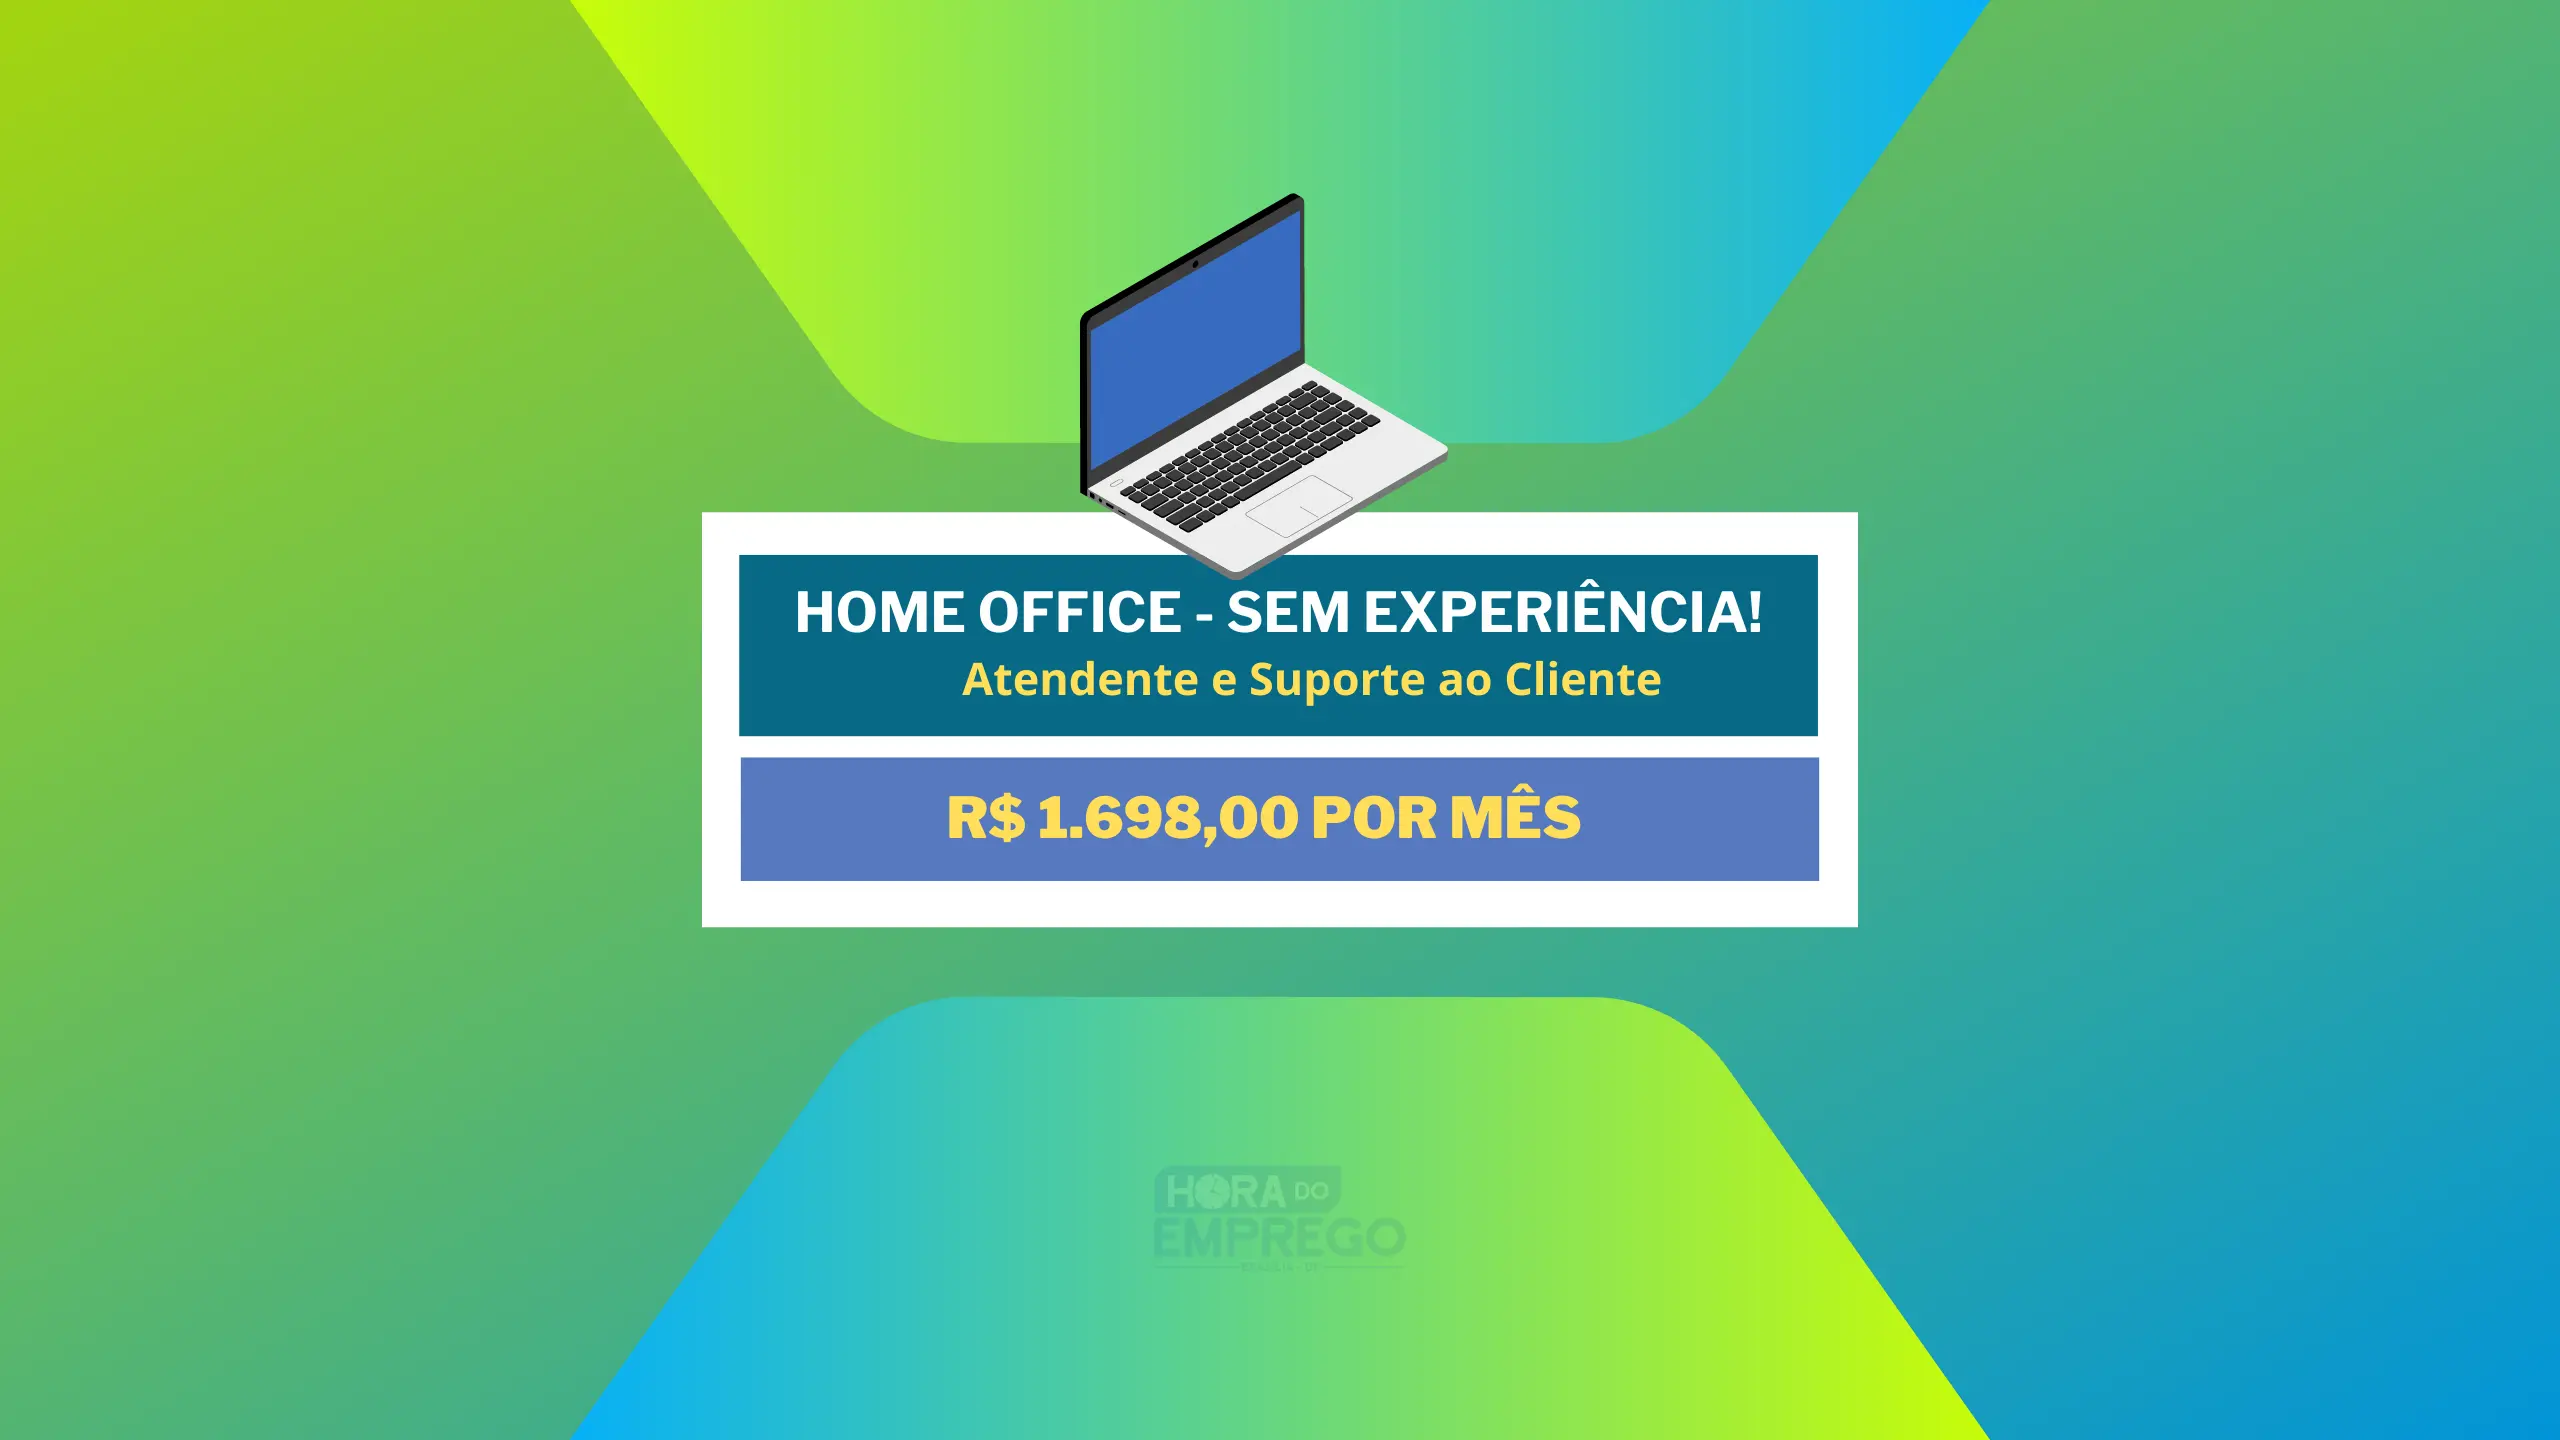 Sem experiência! Empresa de Tecnologia abre vagas HOME OFFICE com salário de R$ 1.698,00 para Atendente para Suporte ao Cliente